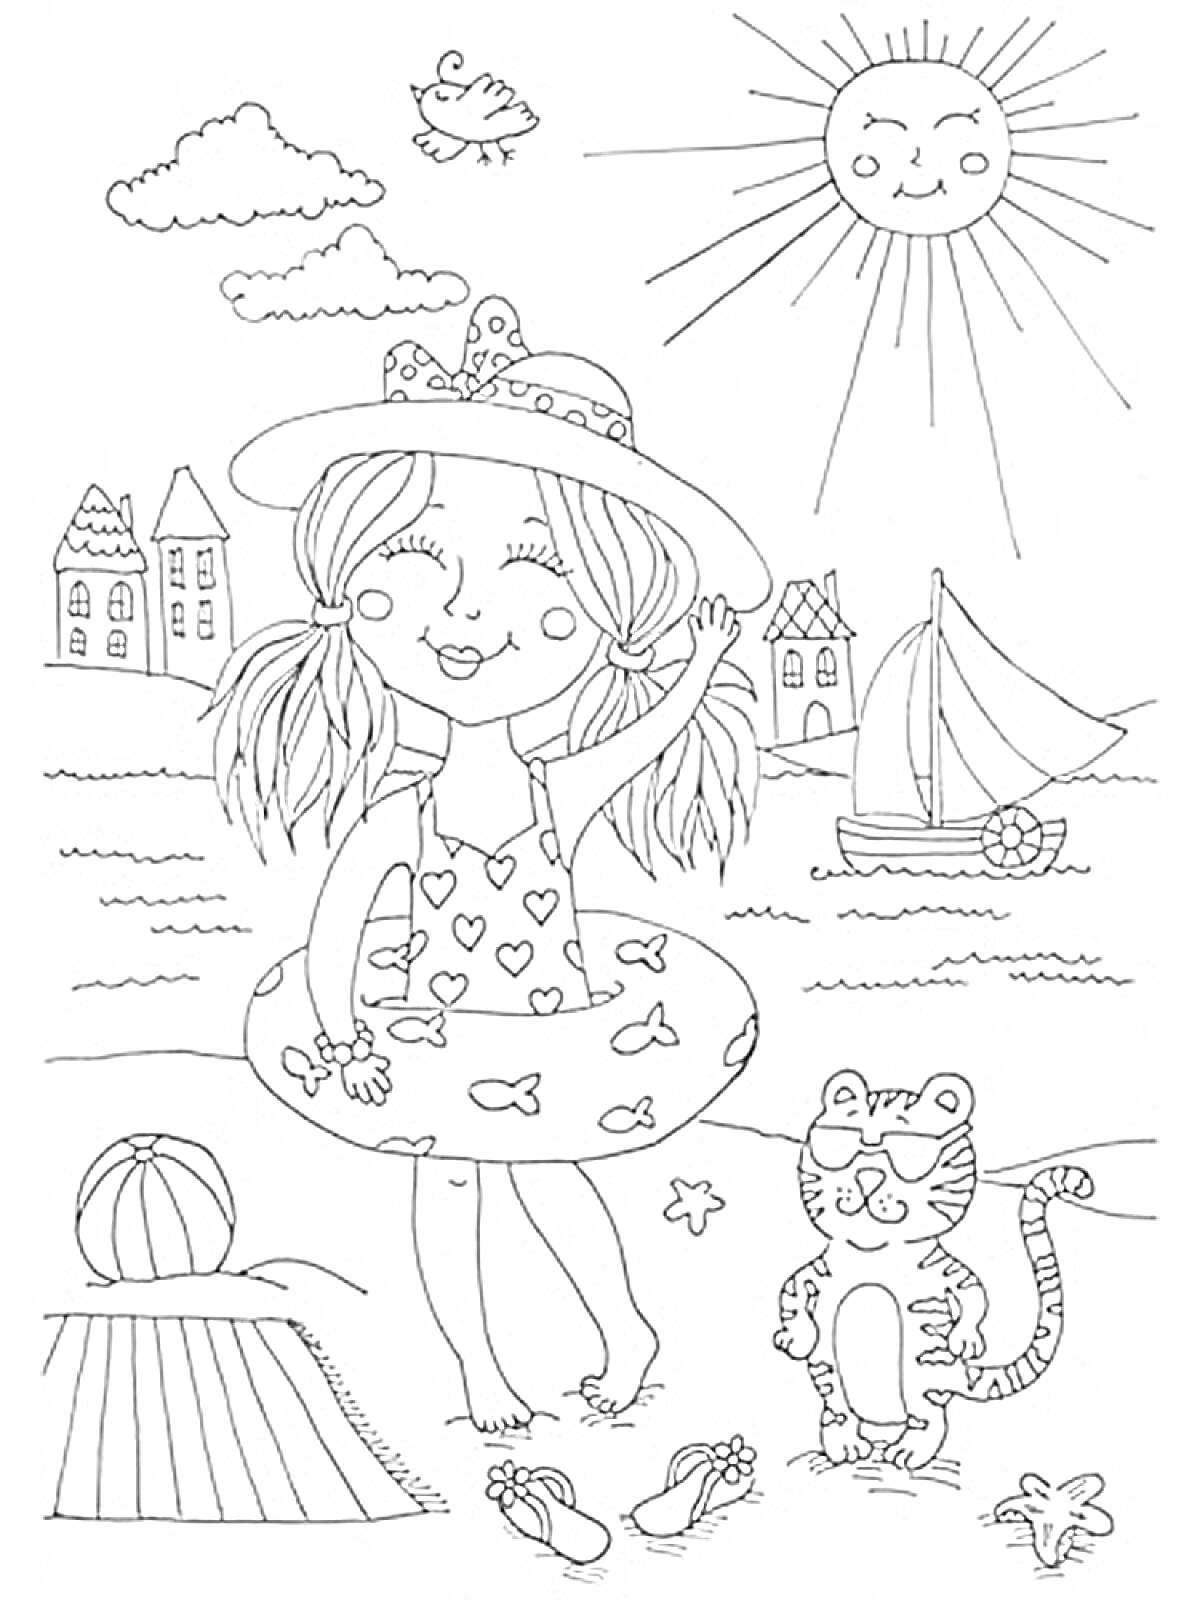 Девочка на пляже с котом, корабликом и солнцем